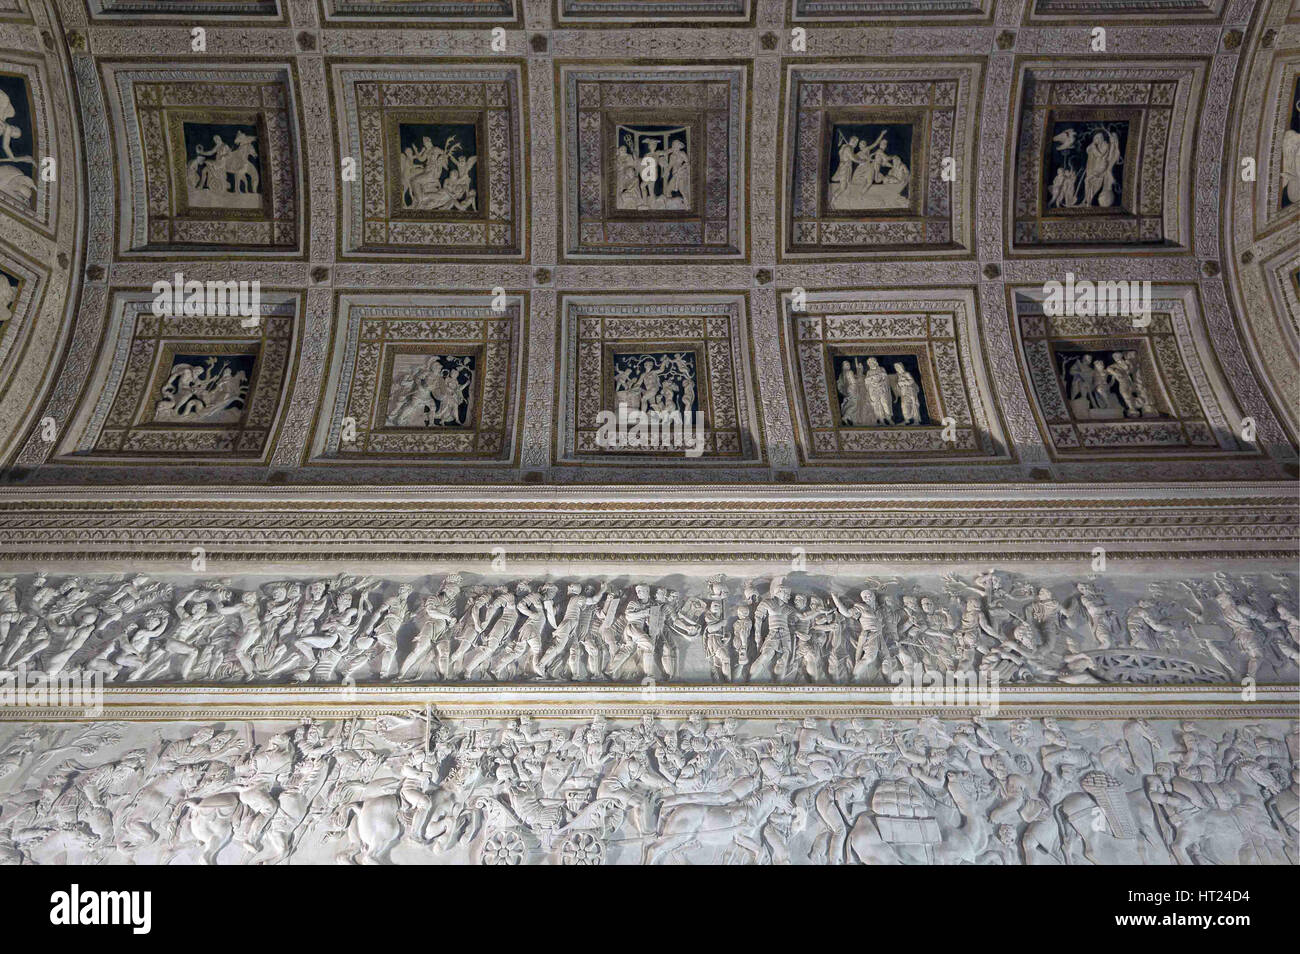 The Room of the Stuccoes (Camera degli Stucchi) of the Palazzo del Tè, 1526-1534. Artist: Primaticcio, Francesco (1504-1570) Stock Photo